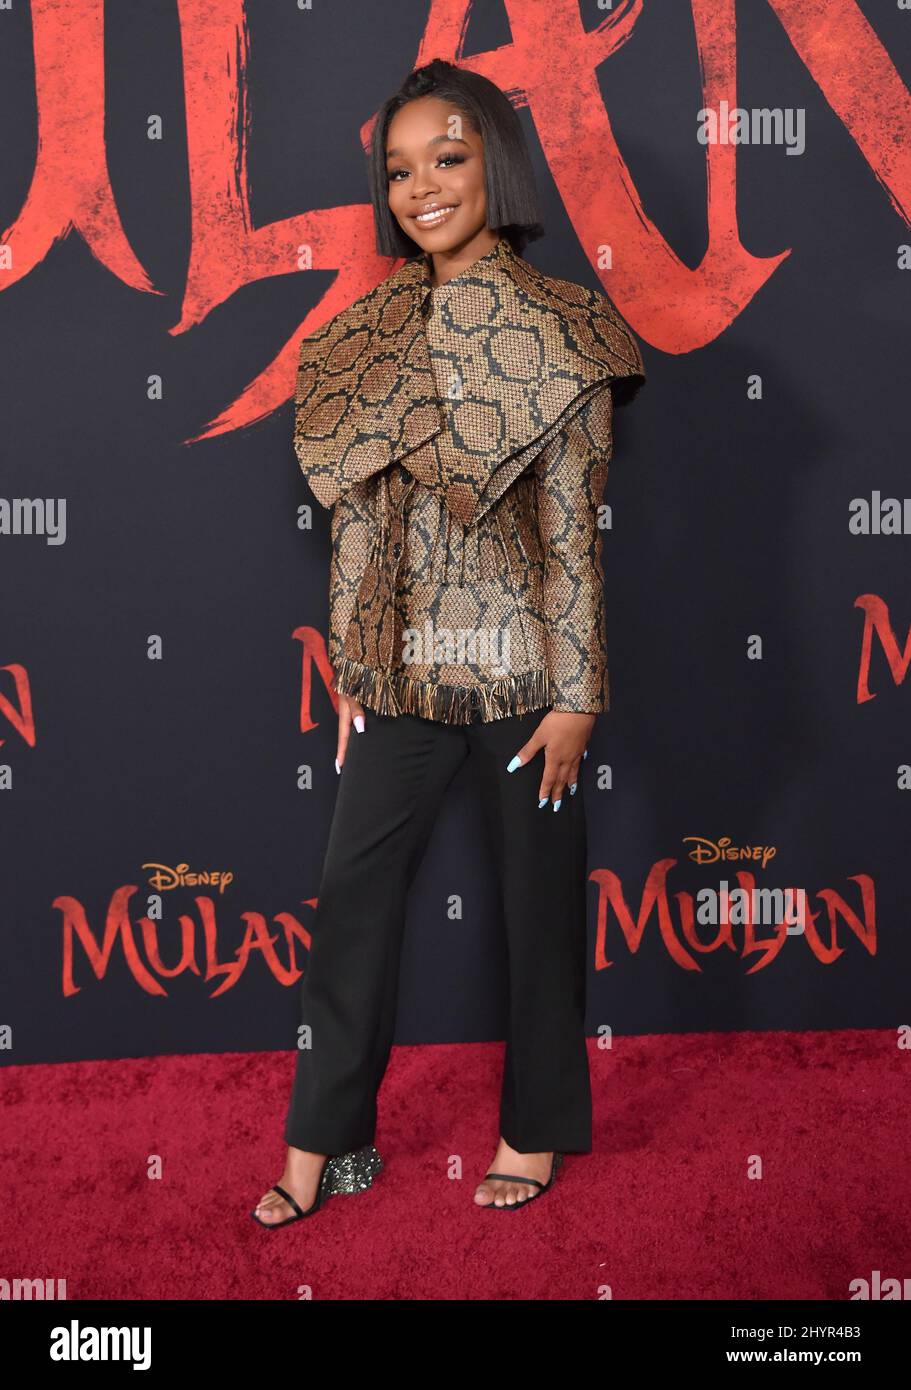 Marsai Martin partecipa al Disney's Mulan World Premiere tenuto a Hollywood, USA lunedì 9 marzo 2020. Foto Stock